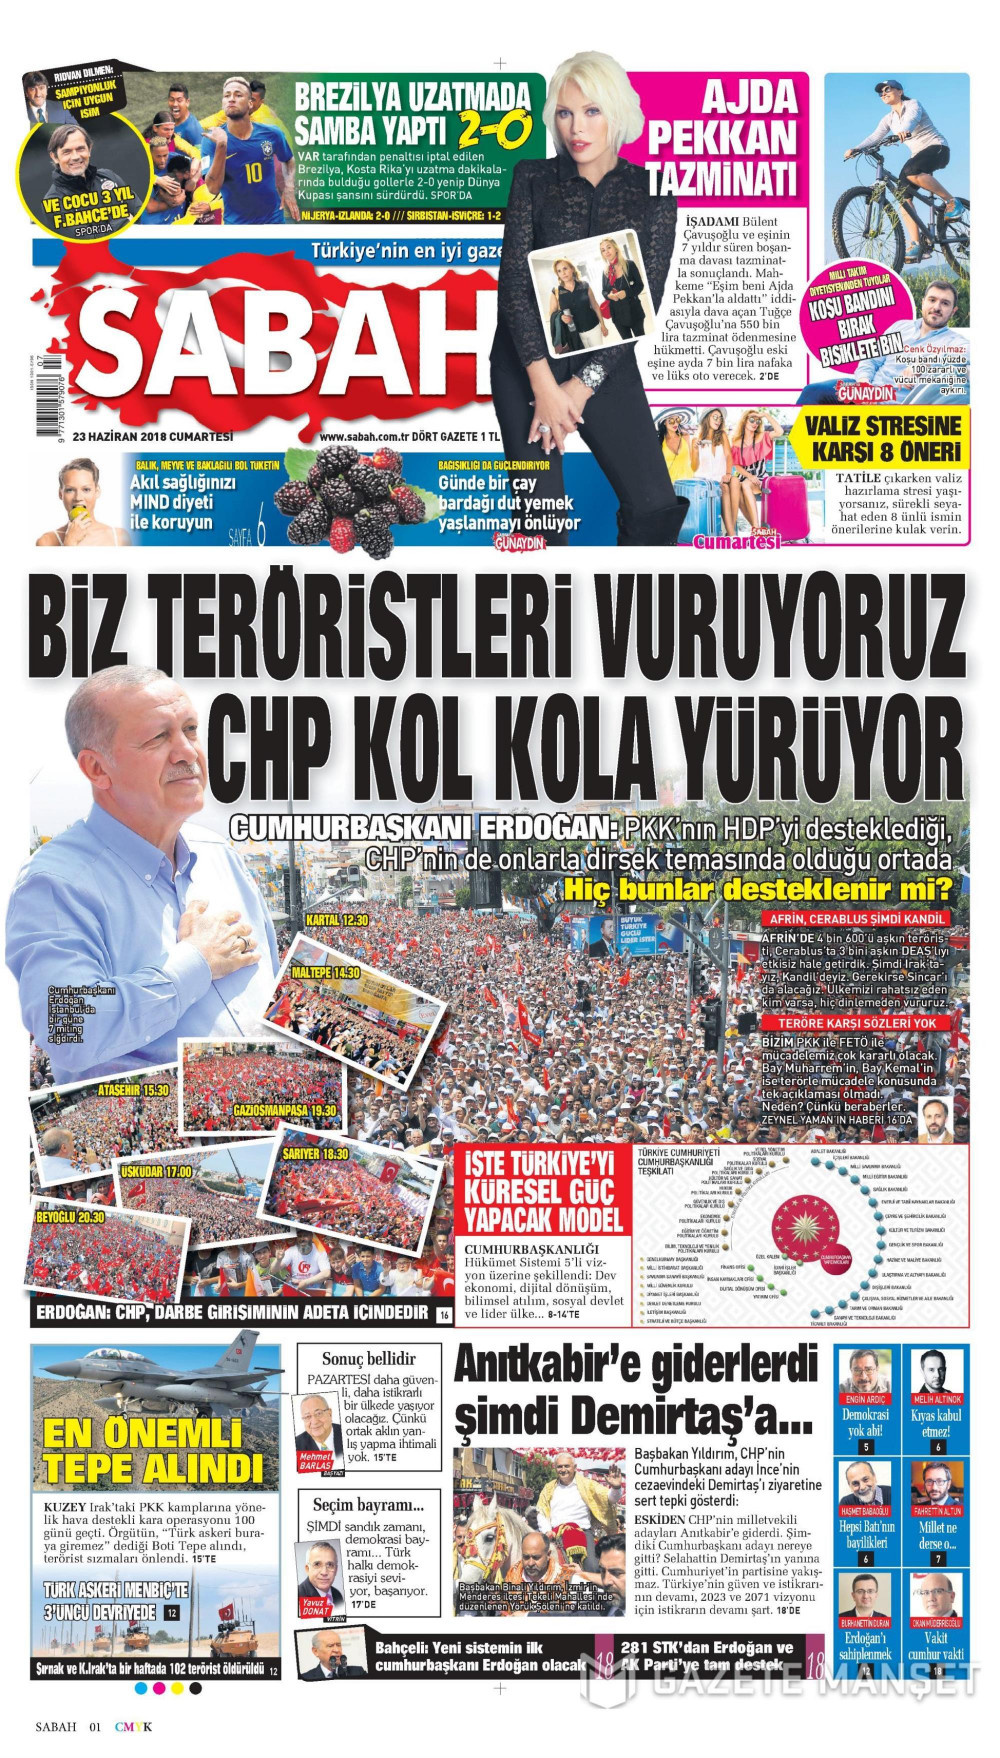 Gazete manşetleri 23 Haziran 2018 Hürriyet - Sözcü - Habertürk